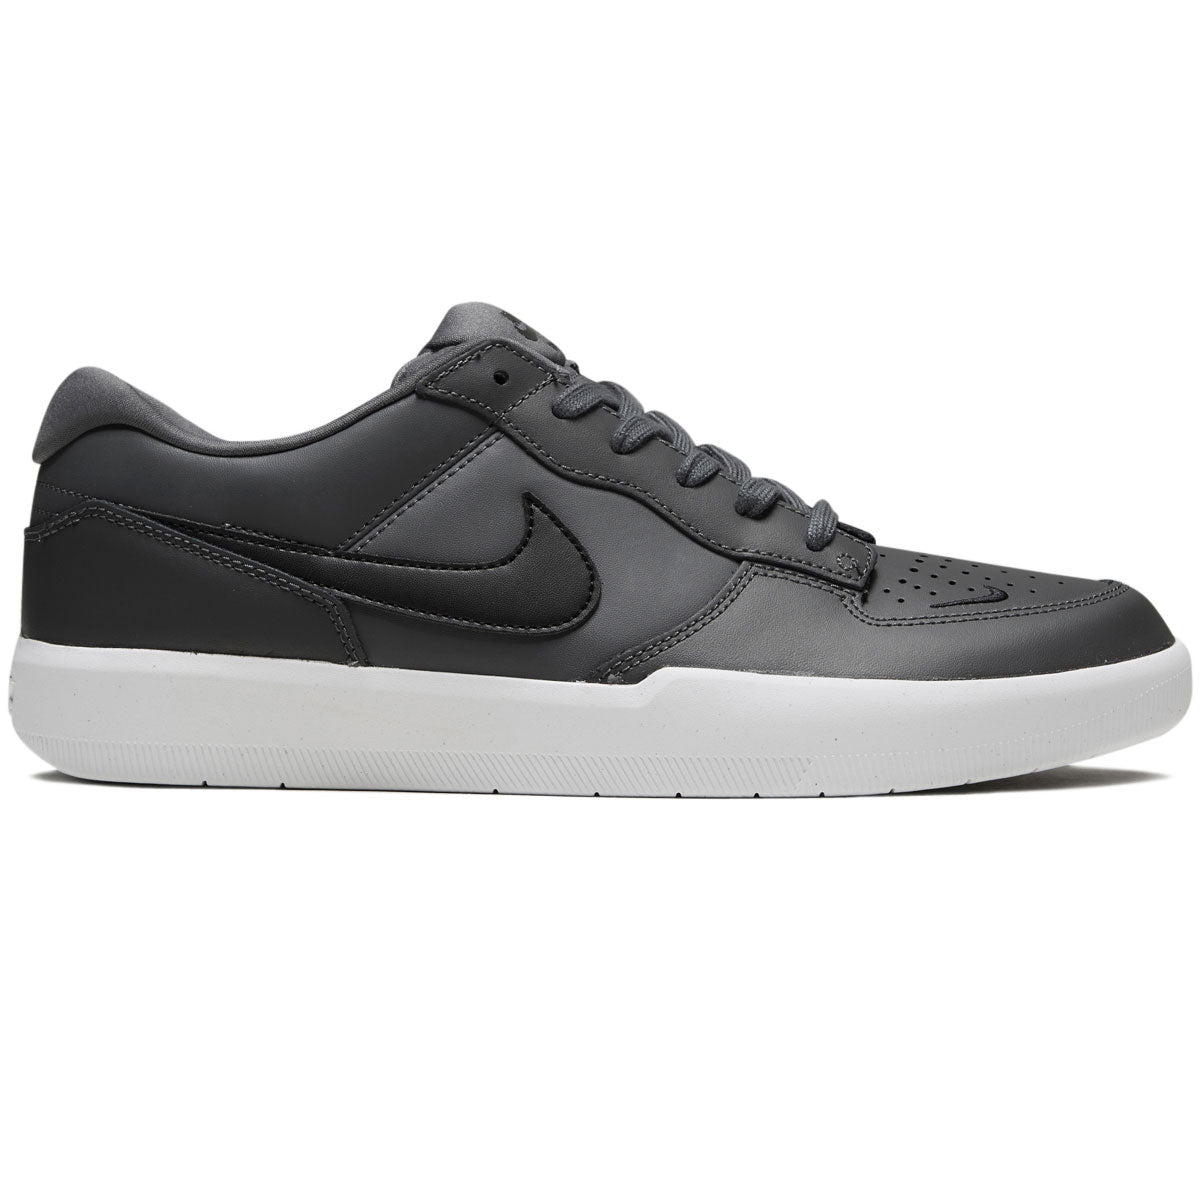 Cantidad de Viento fuerte tubo Nike SB Force 58 Premium Shoes - Dark Grey/Black/Dark Grey/Black – CCS